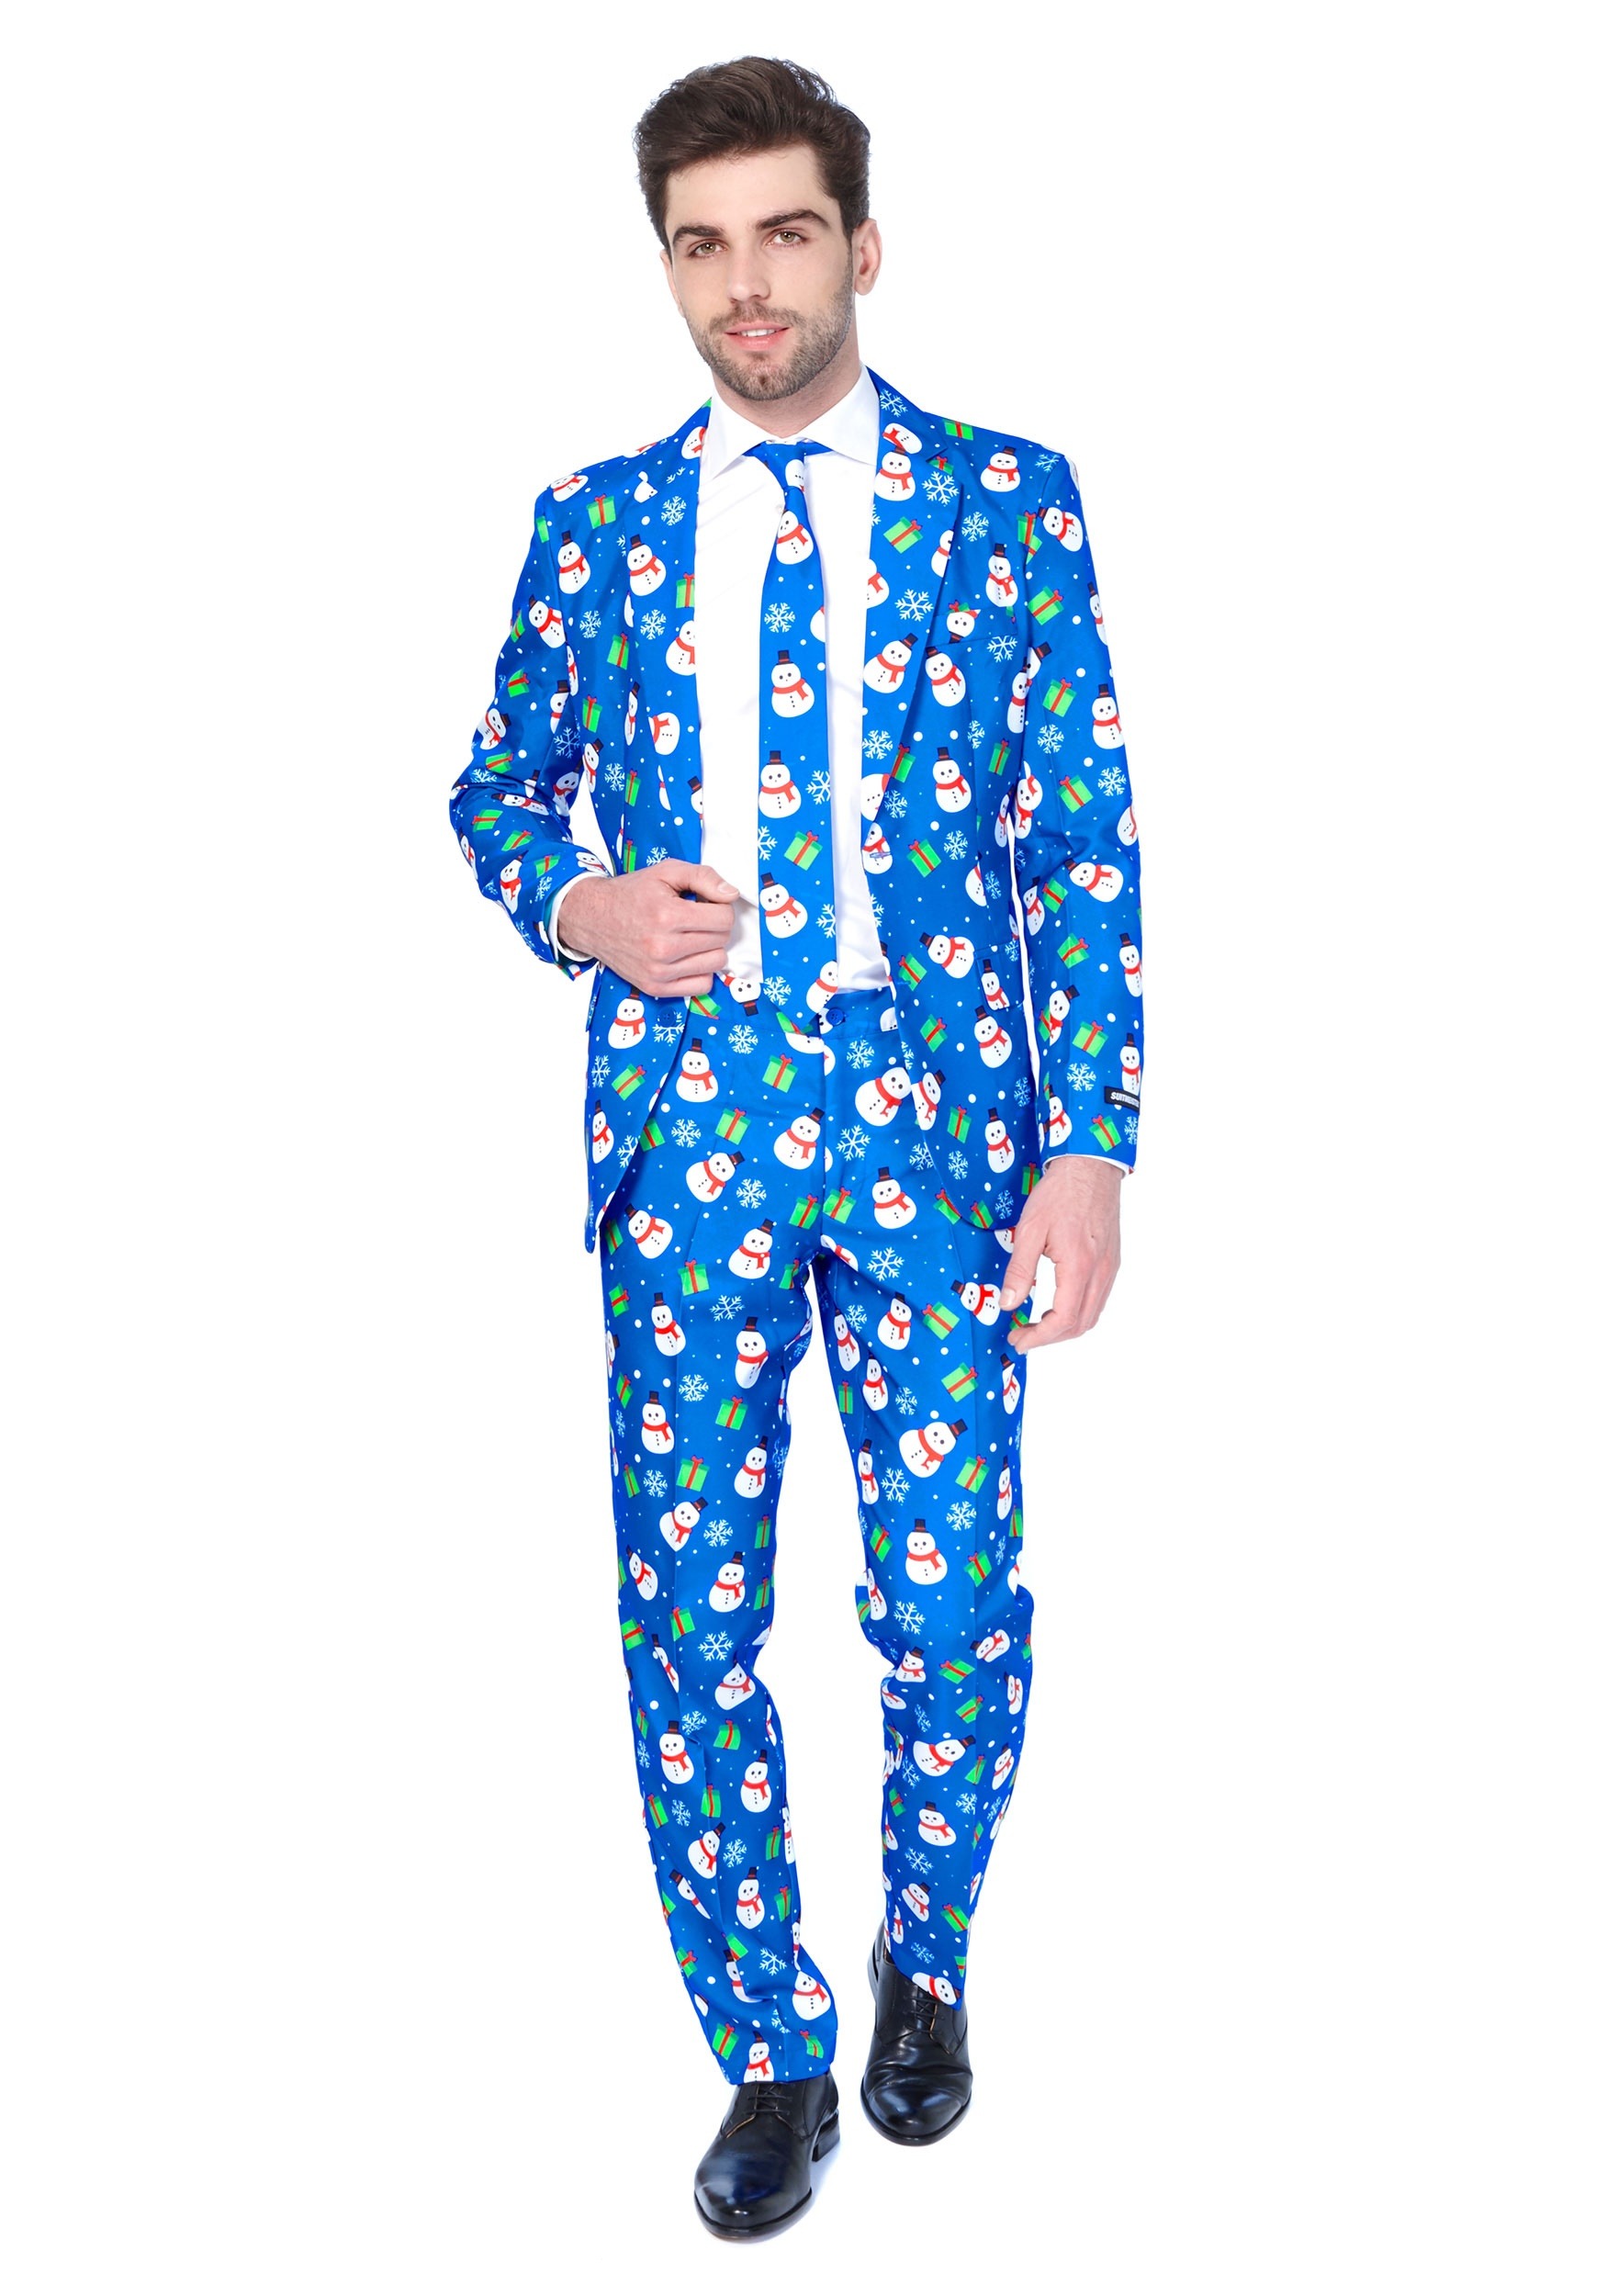 Men's Blue Snowman Suitmeister Suit